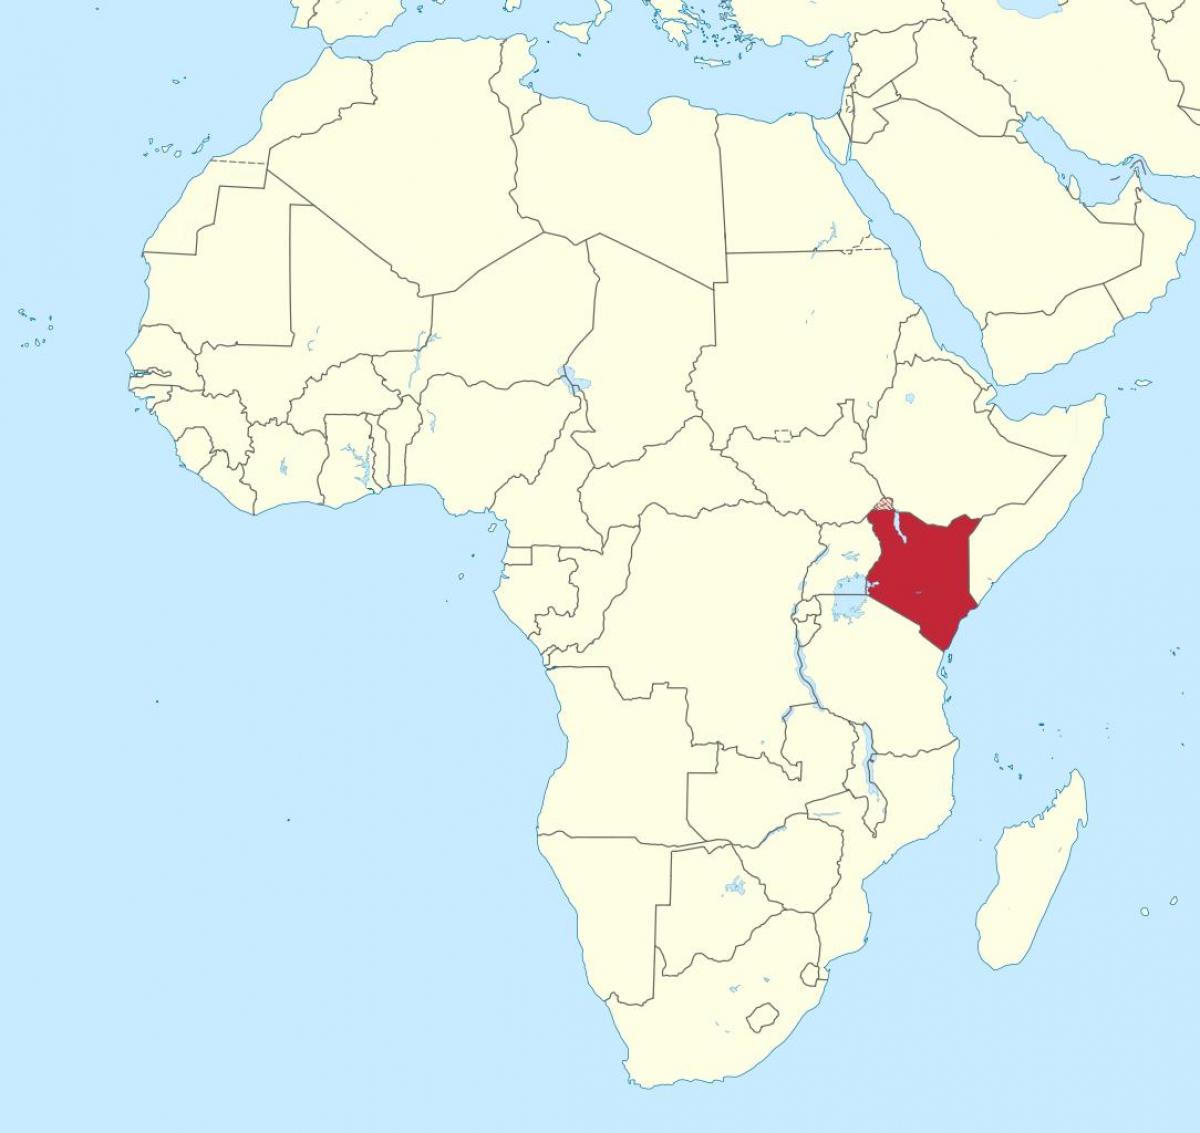 মানচিত্র আফ্রিকার দেশ কেনিয়া